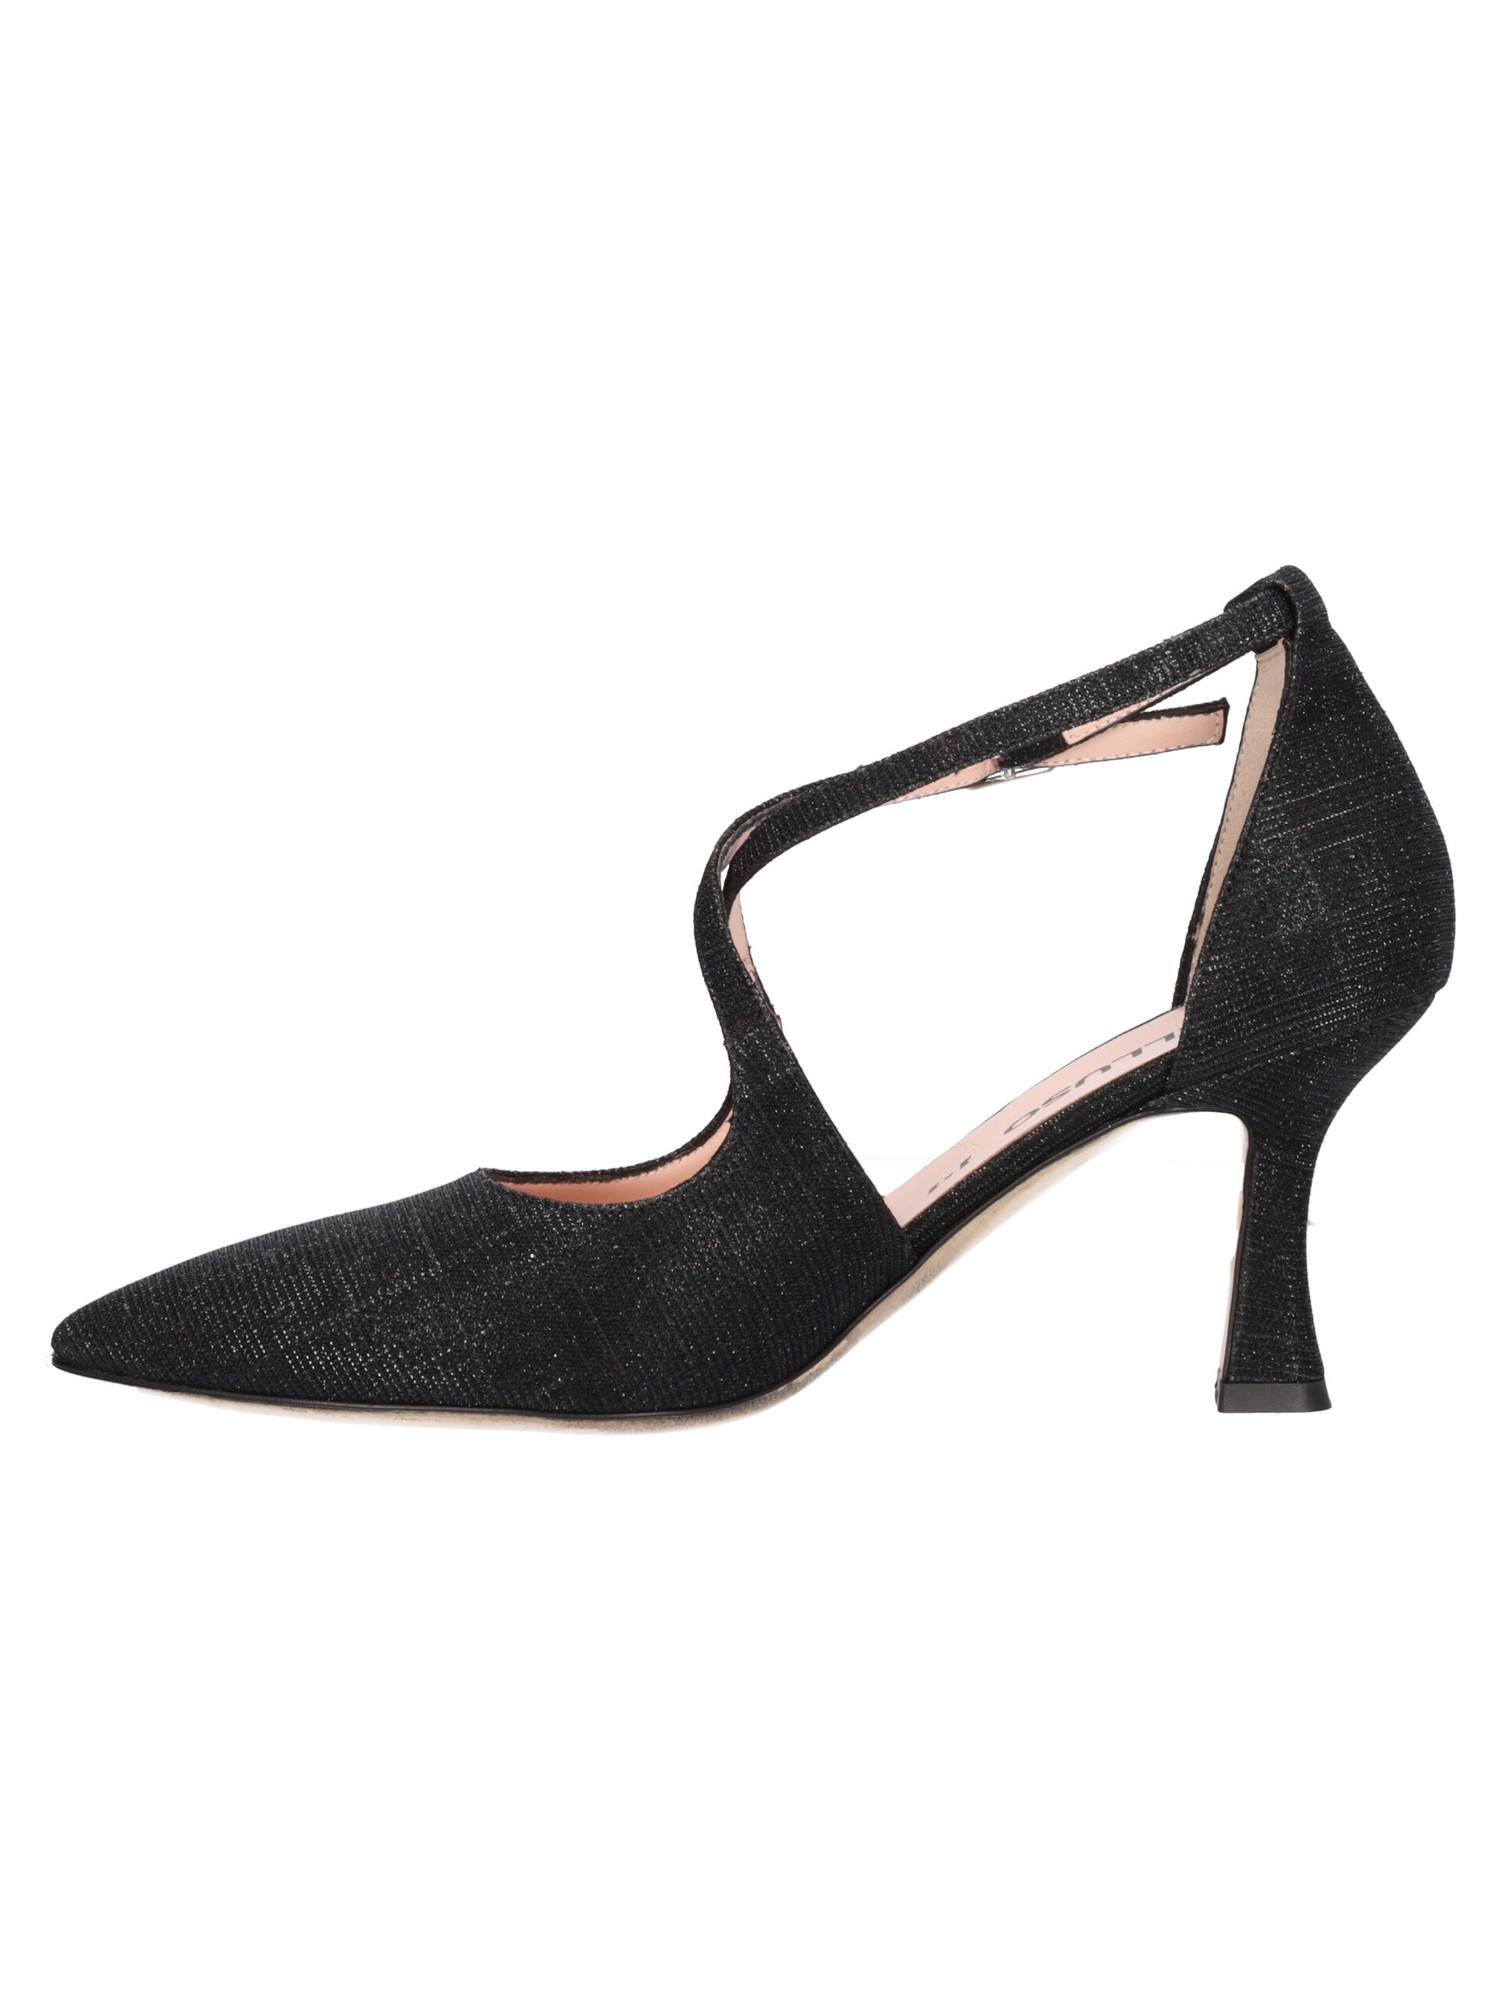 scarpa-elegante-con-tacco-fino-melluso-da-donna-nera-glitter